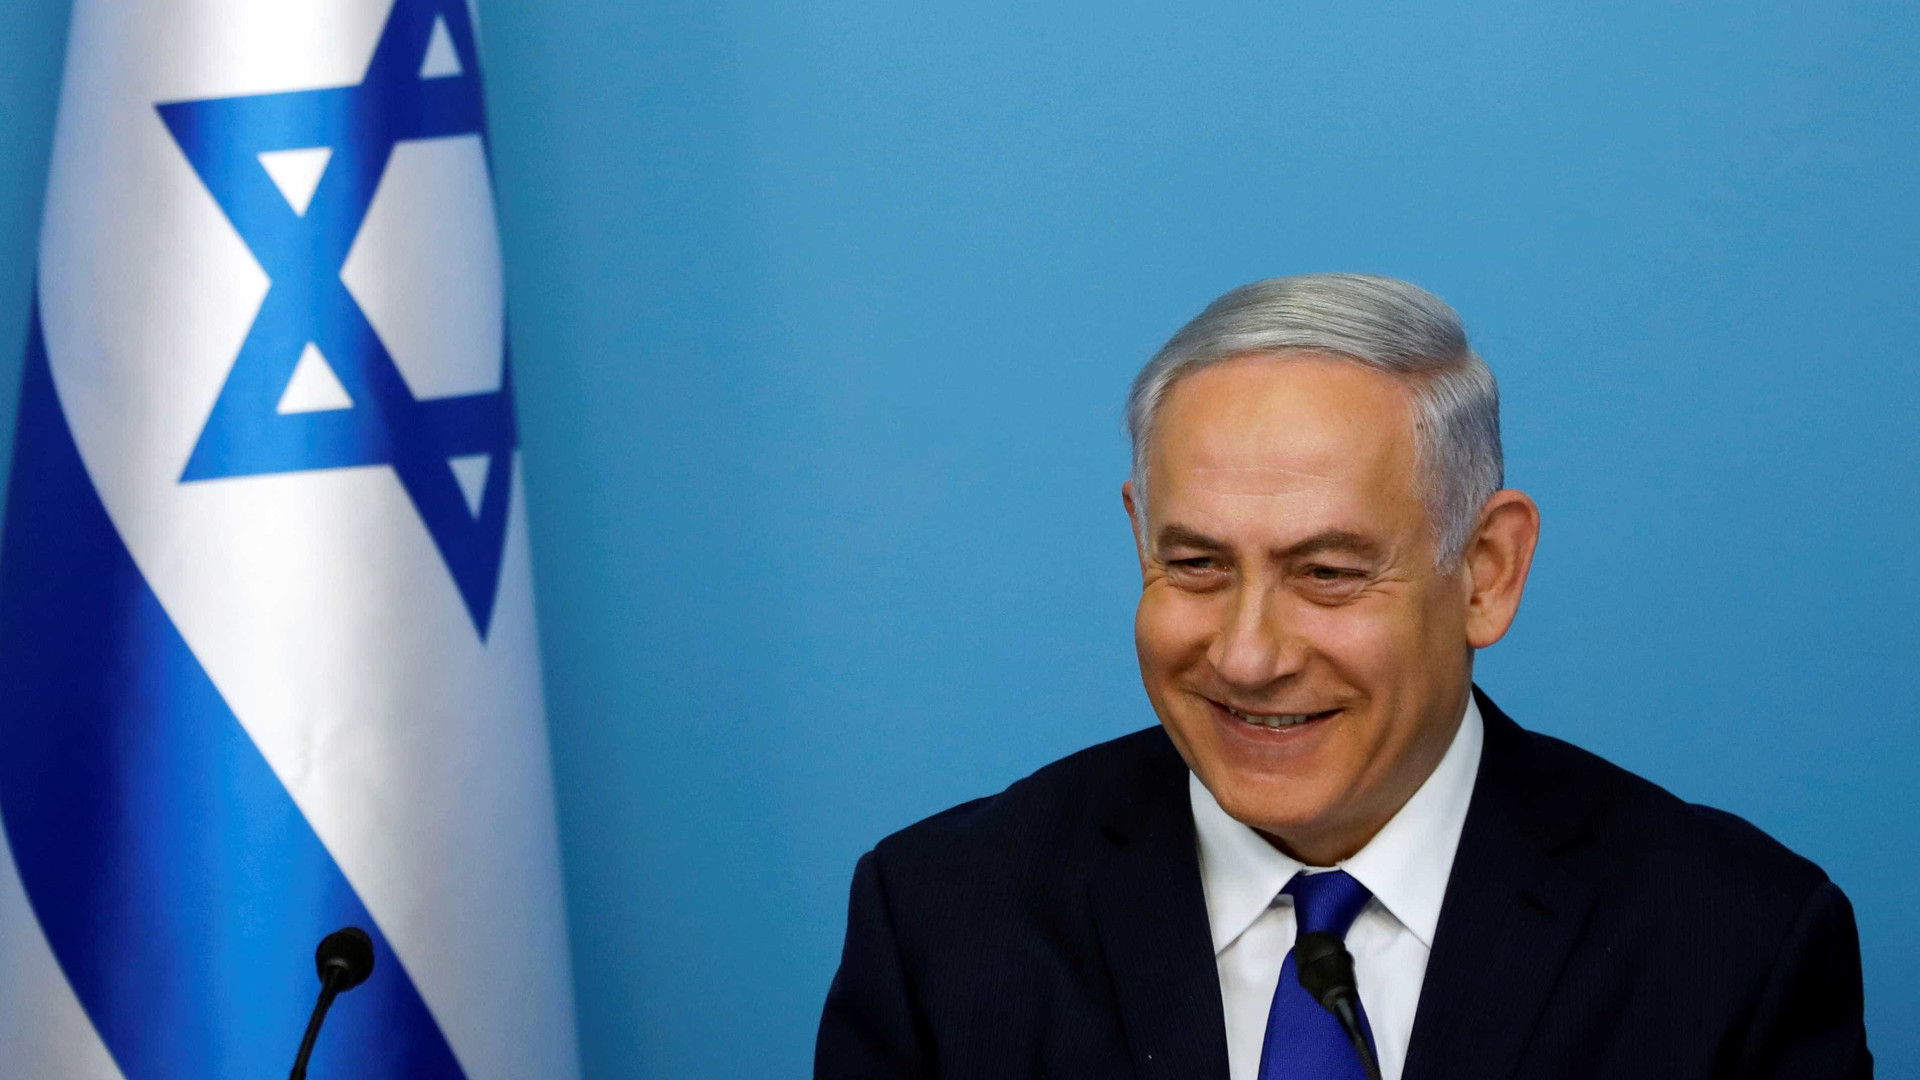 Netanyahu celebra decisão de Bolsonaro de mudar embaixada